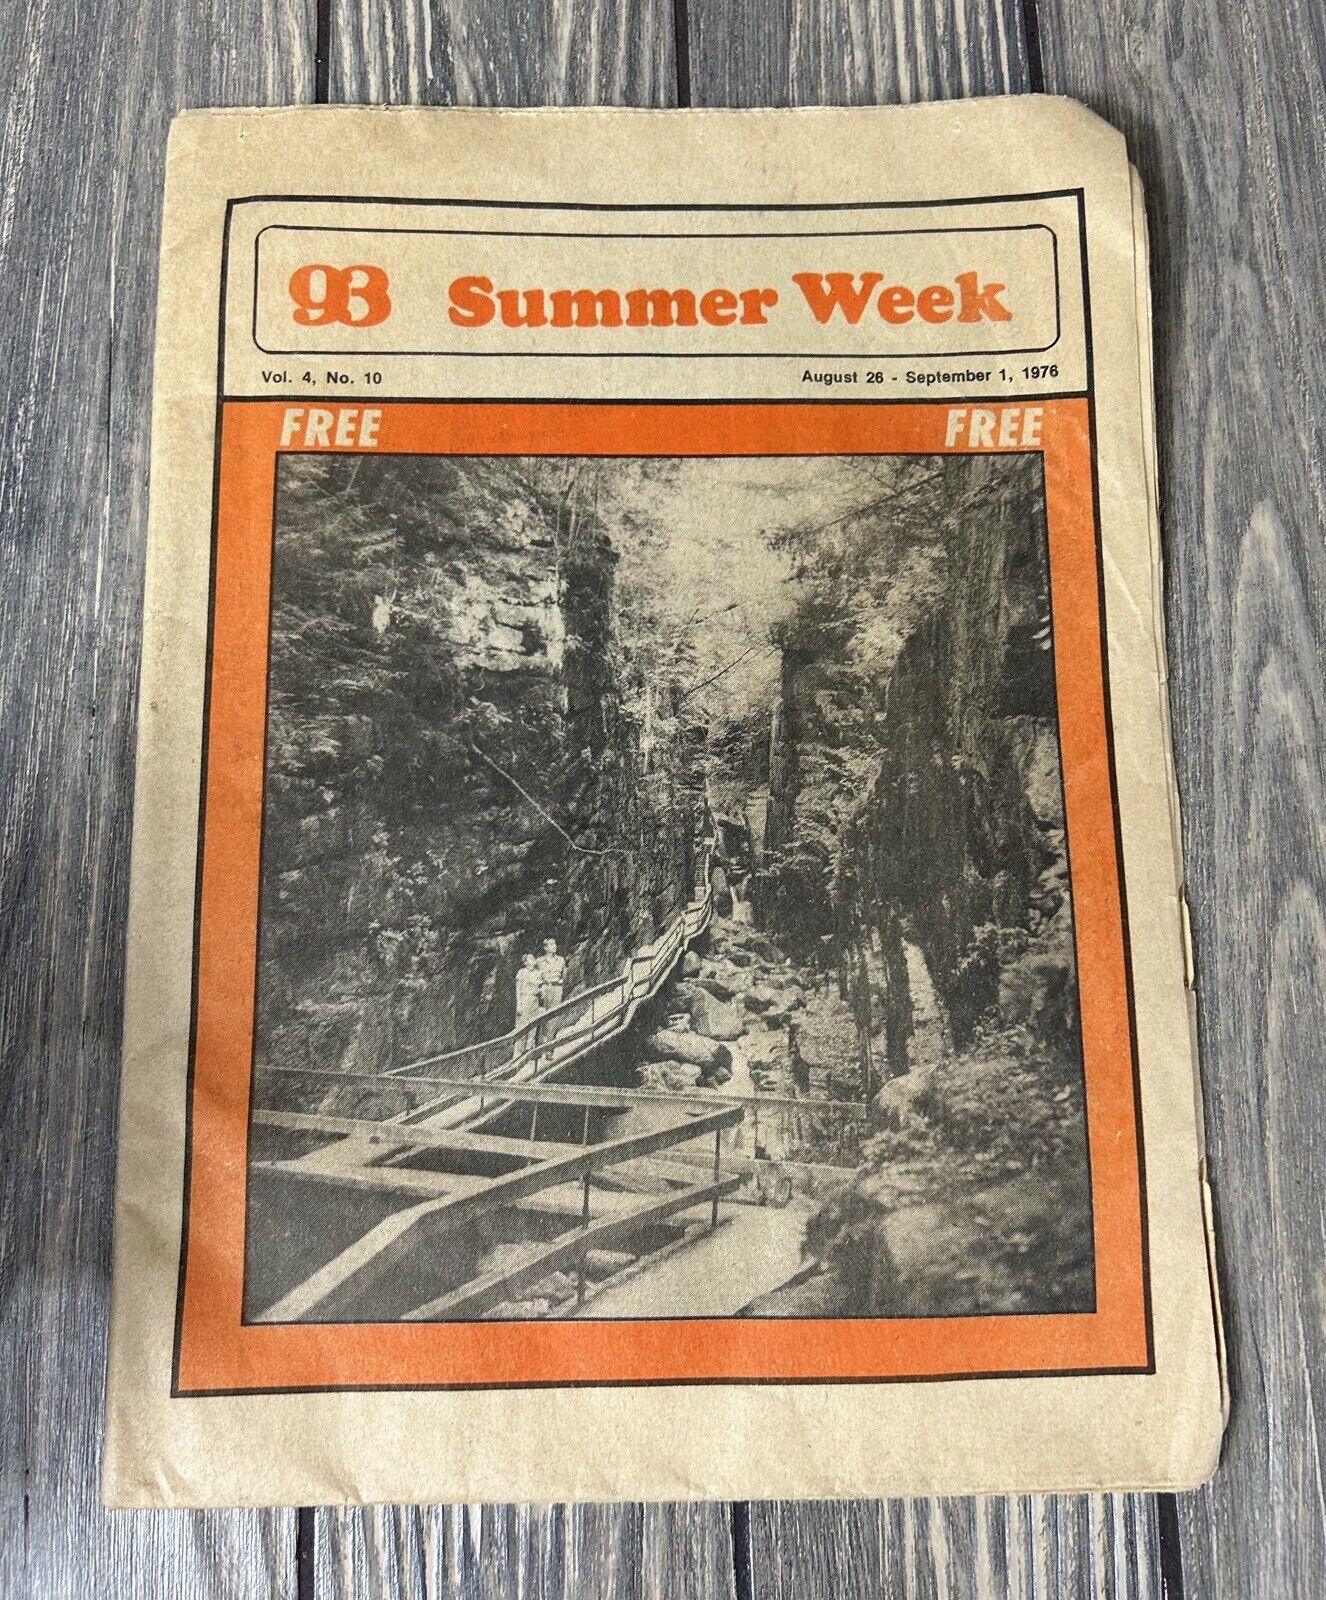 Vintage August 26 - September 1 1976 Summer Week Vol 4 No 10 Paper